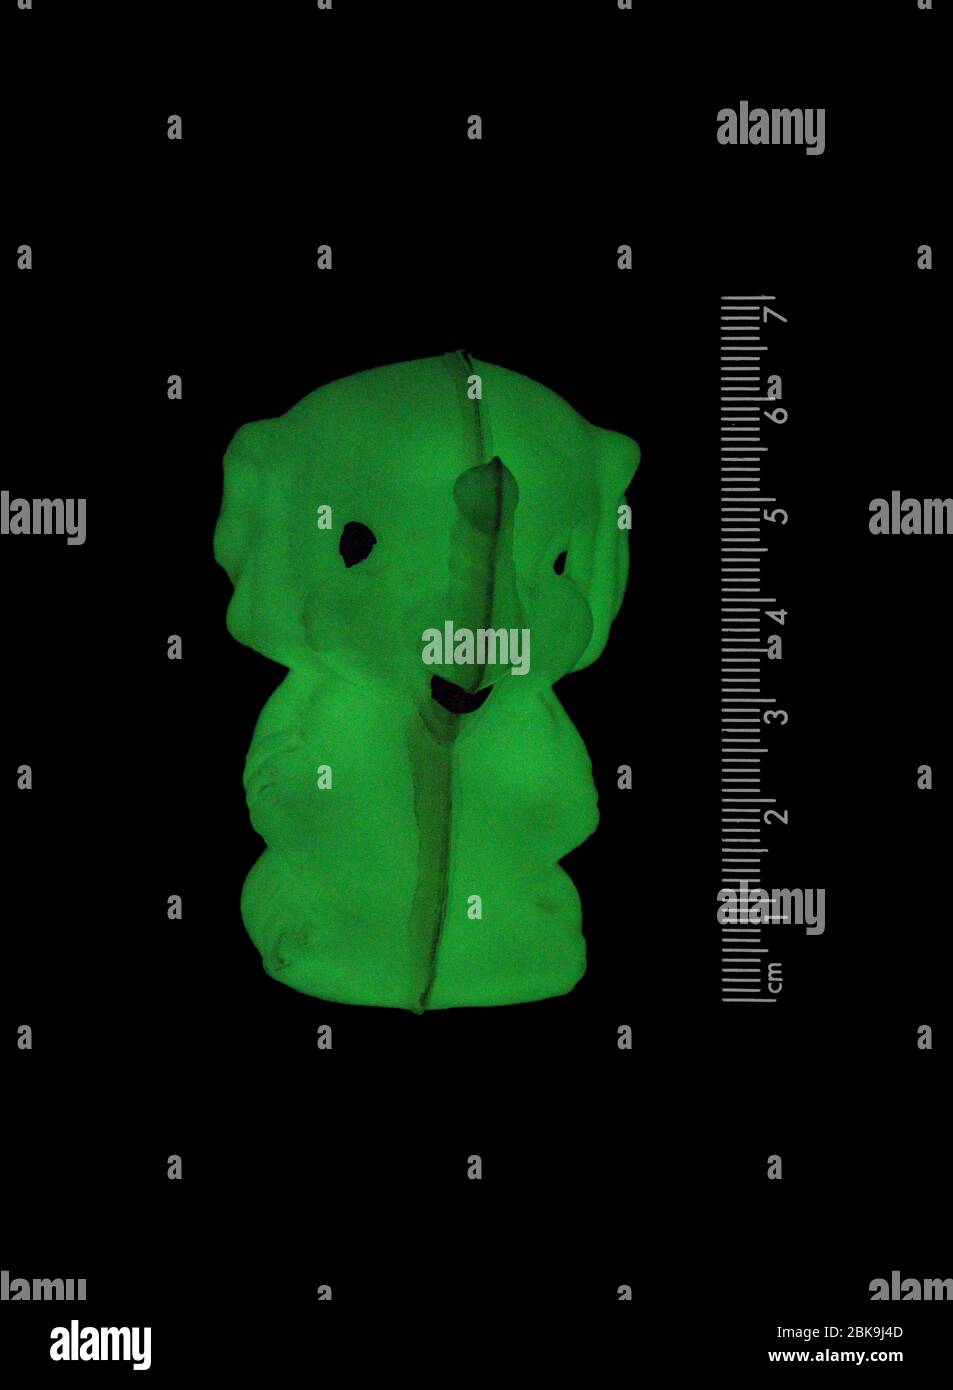 Una foto scattata nel buio totale di un trinket di plastica simile a un elefante. Rivestito con vernice fosforescente, si illumina di verde al buio. Foto Stock